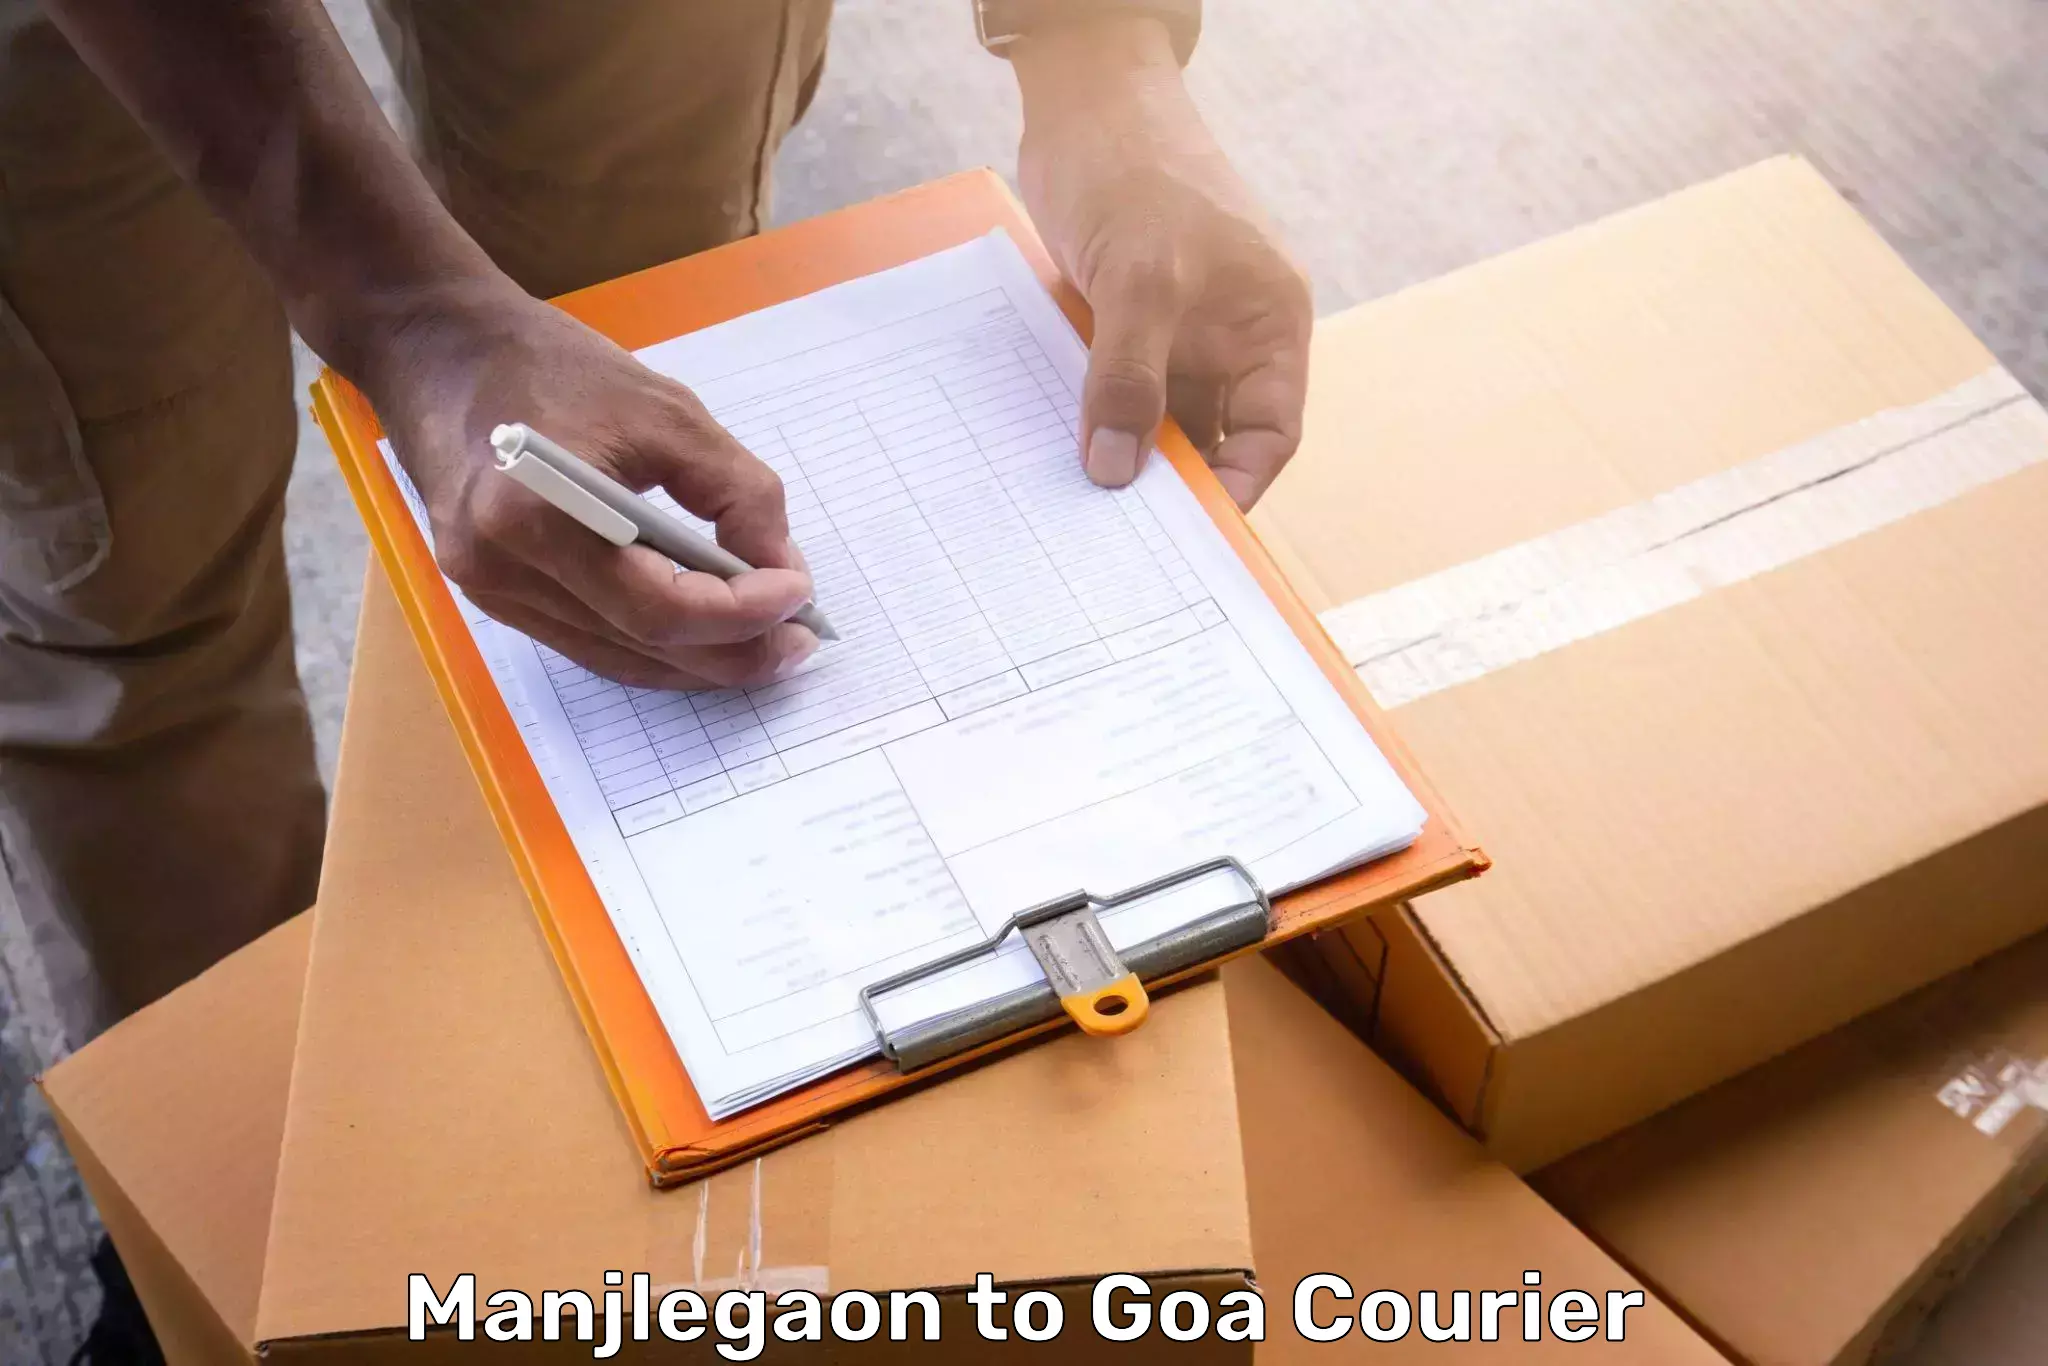 Train station baggage courier Manjlegaon to Goa